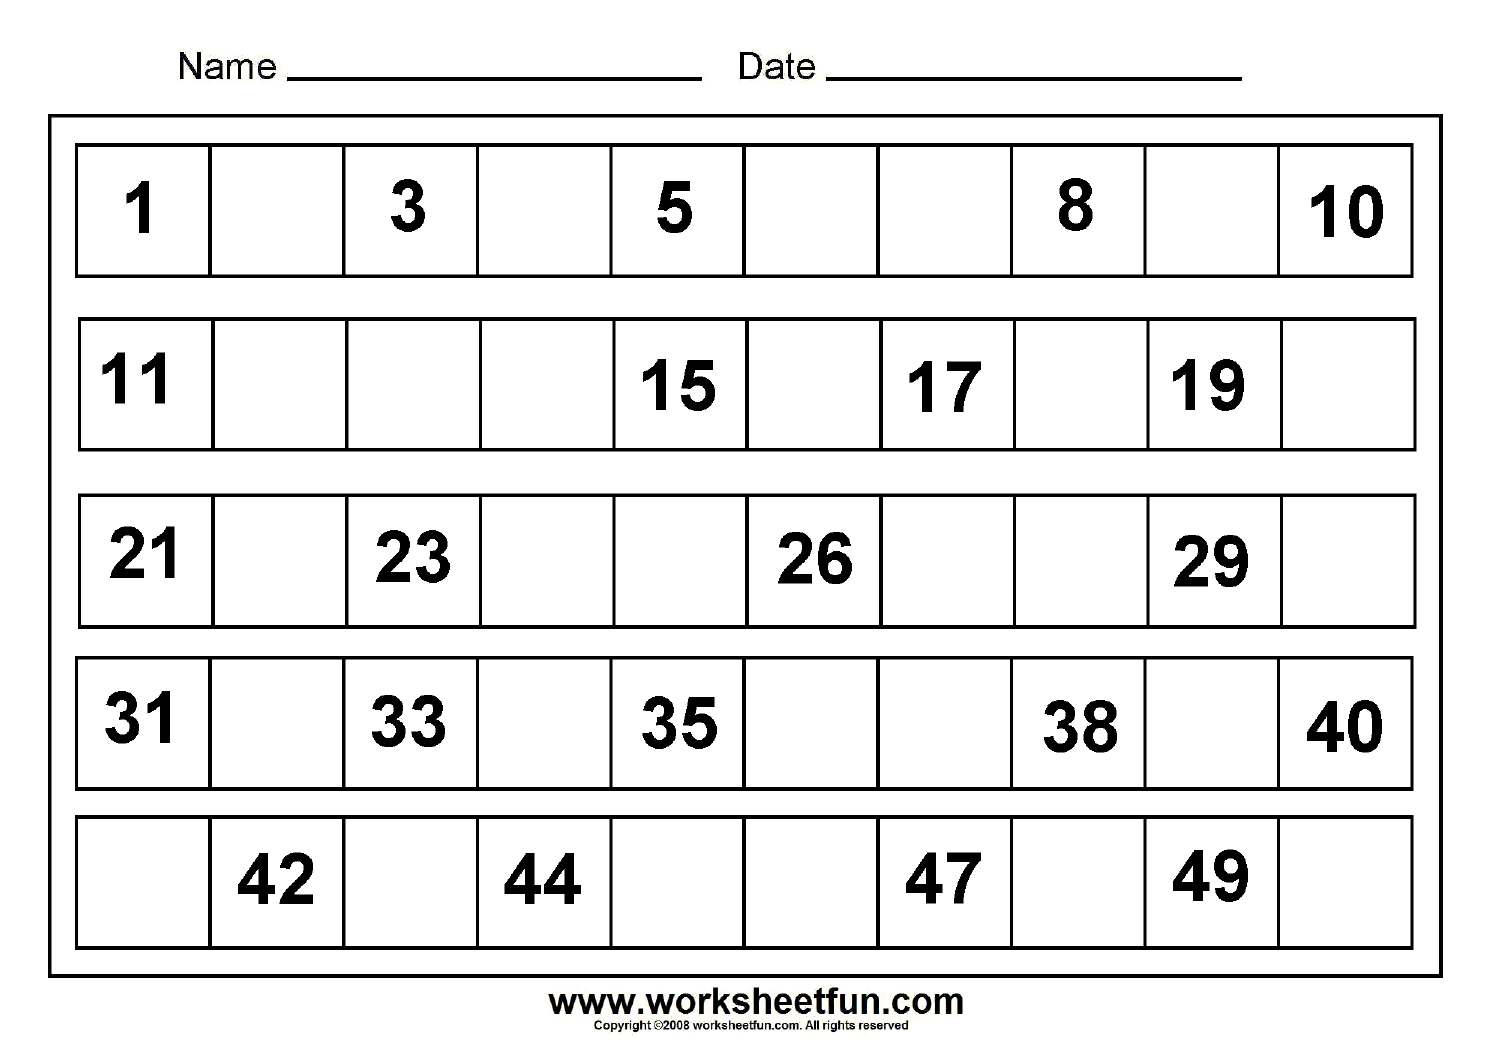 missing-numbers-1-to-50-8-worksheets-free-printable-worksheets-50